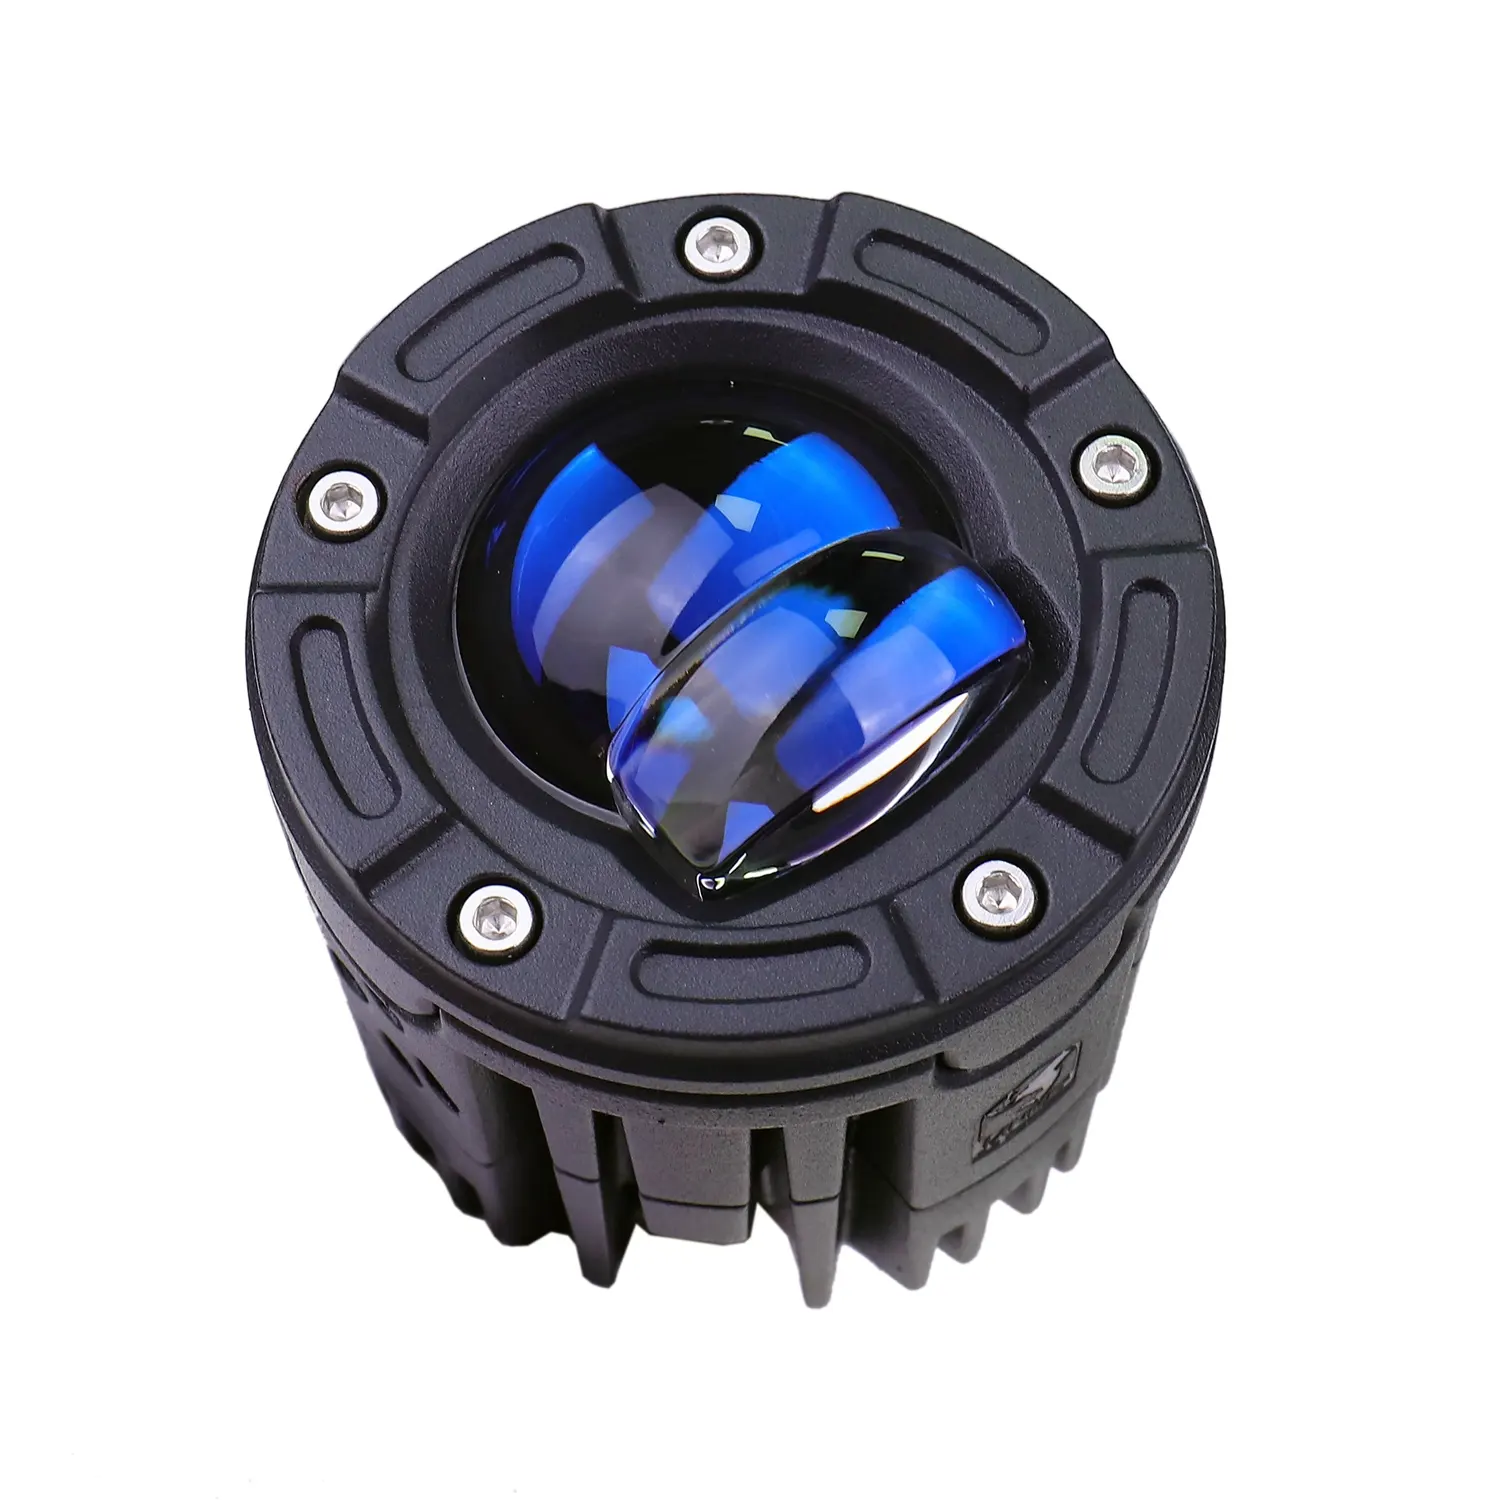 Neuer LED-Scheinwerfer für Kraftfahrzeuge in China S11 Wasserdichte Bi-LED-Projektor linsen scheinwerfer mit Smart Controller 70w 6000k Motor lampe